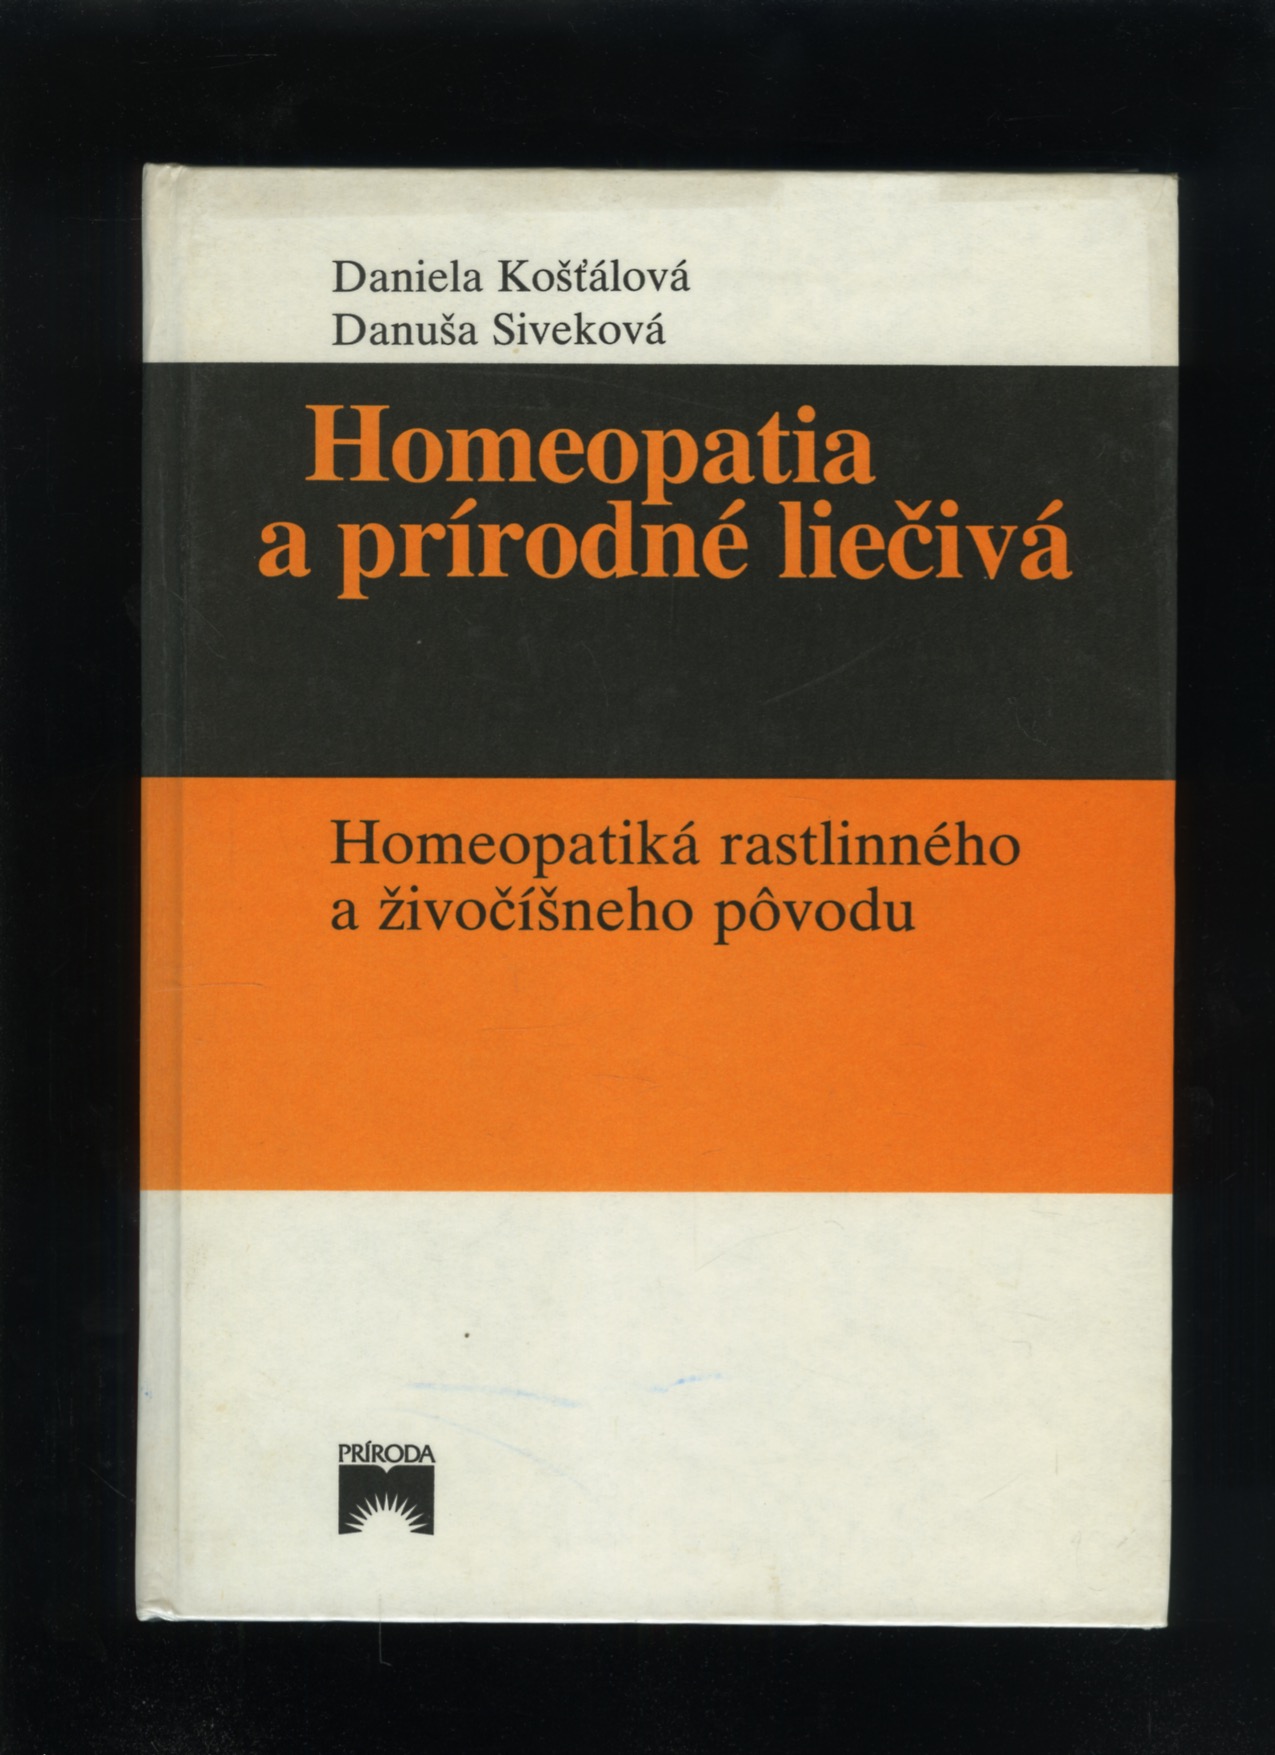 Homeopatia a prírodné liečivá (Daniela Košťálová, Danuša Siveková)